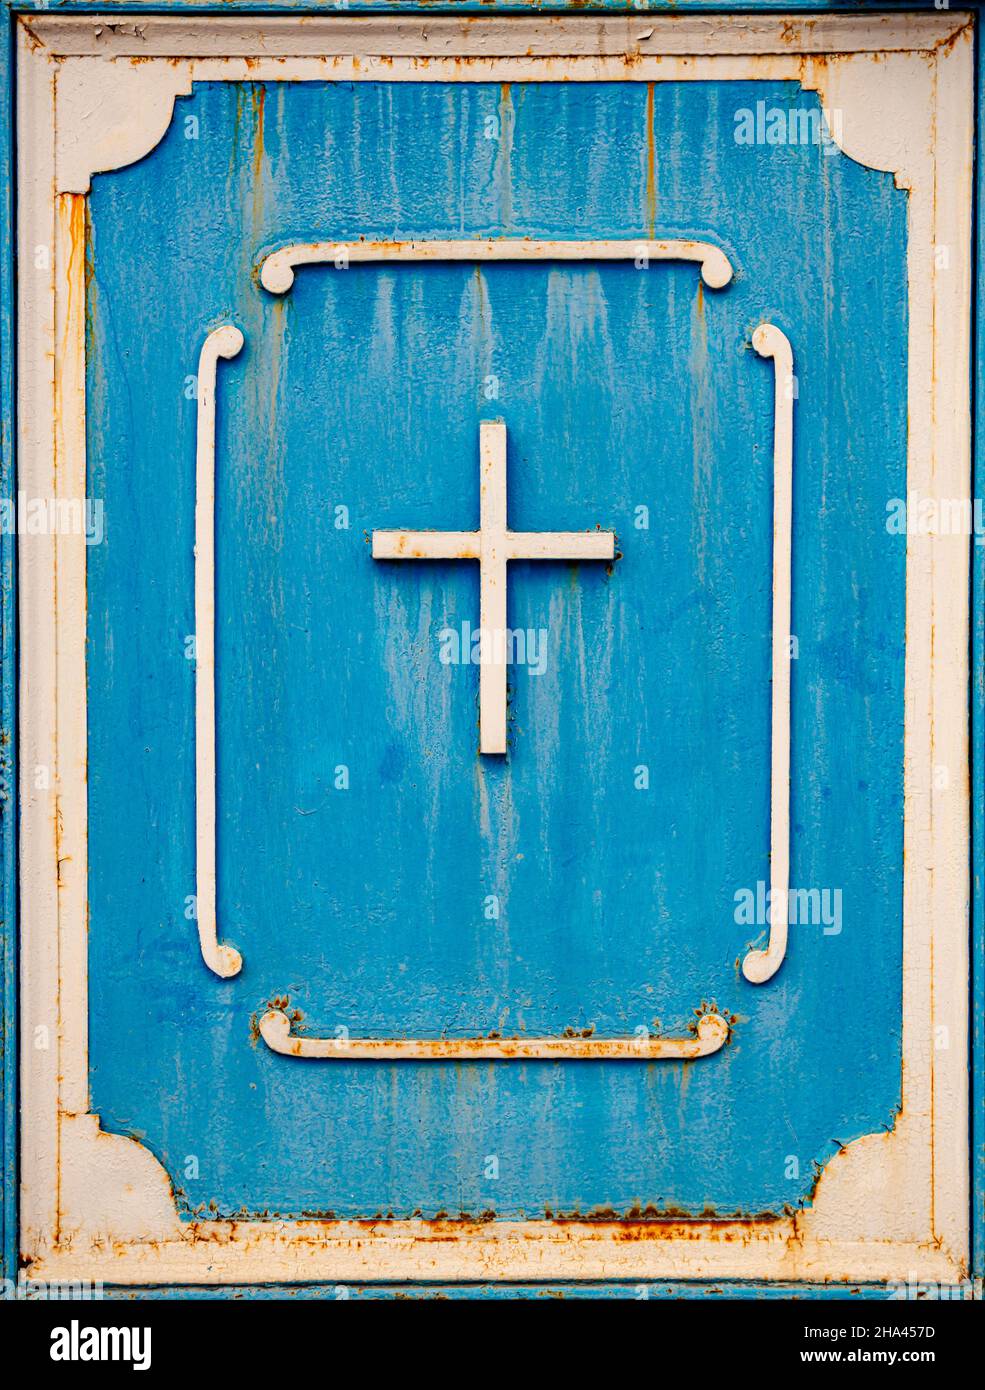 Antigua cruz de metal en la puerta azul símbolo cristiano Foto de stock